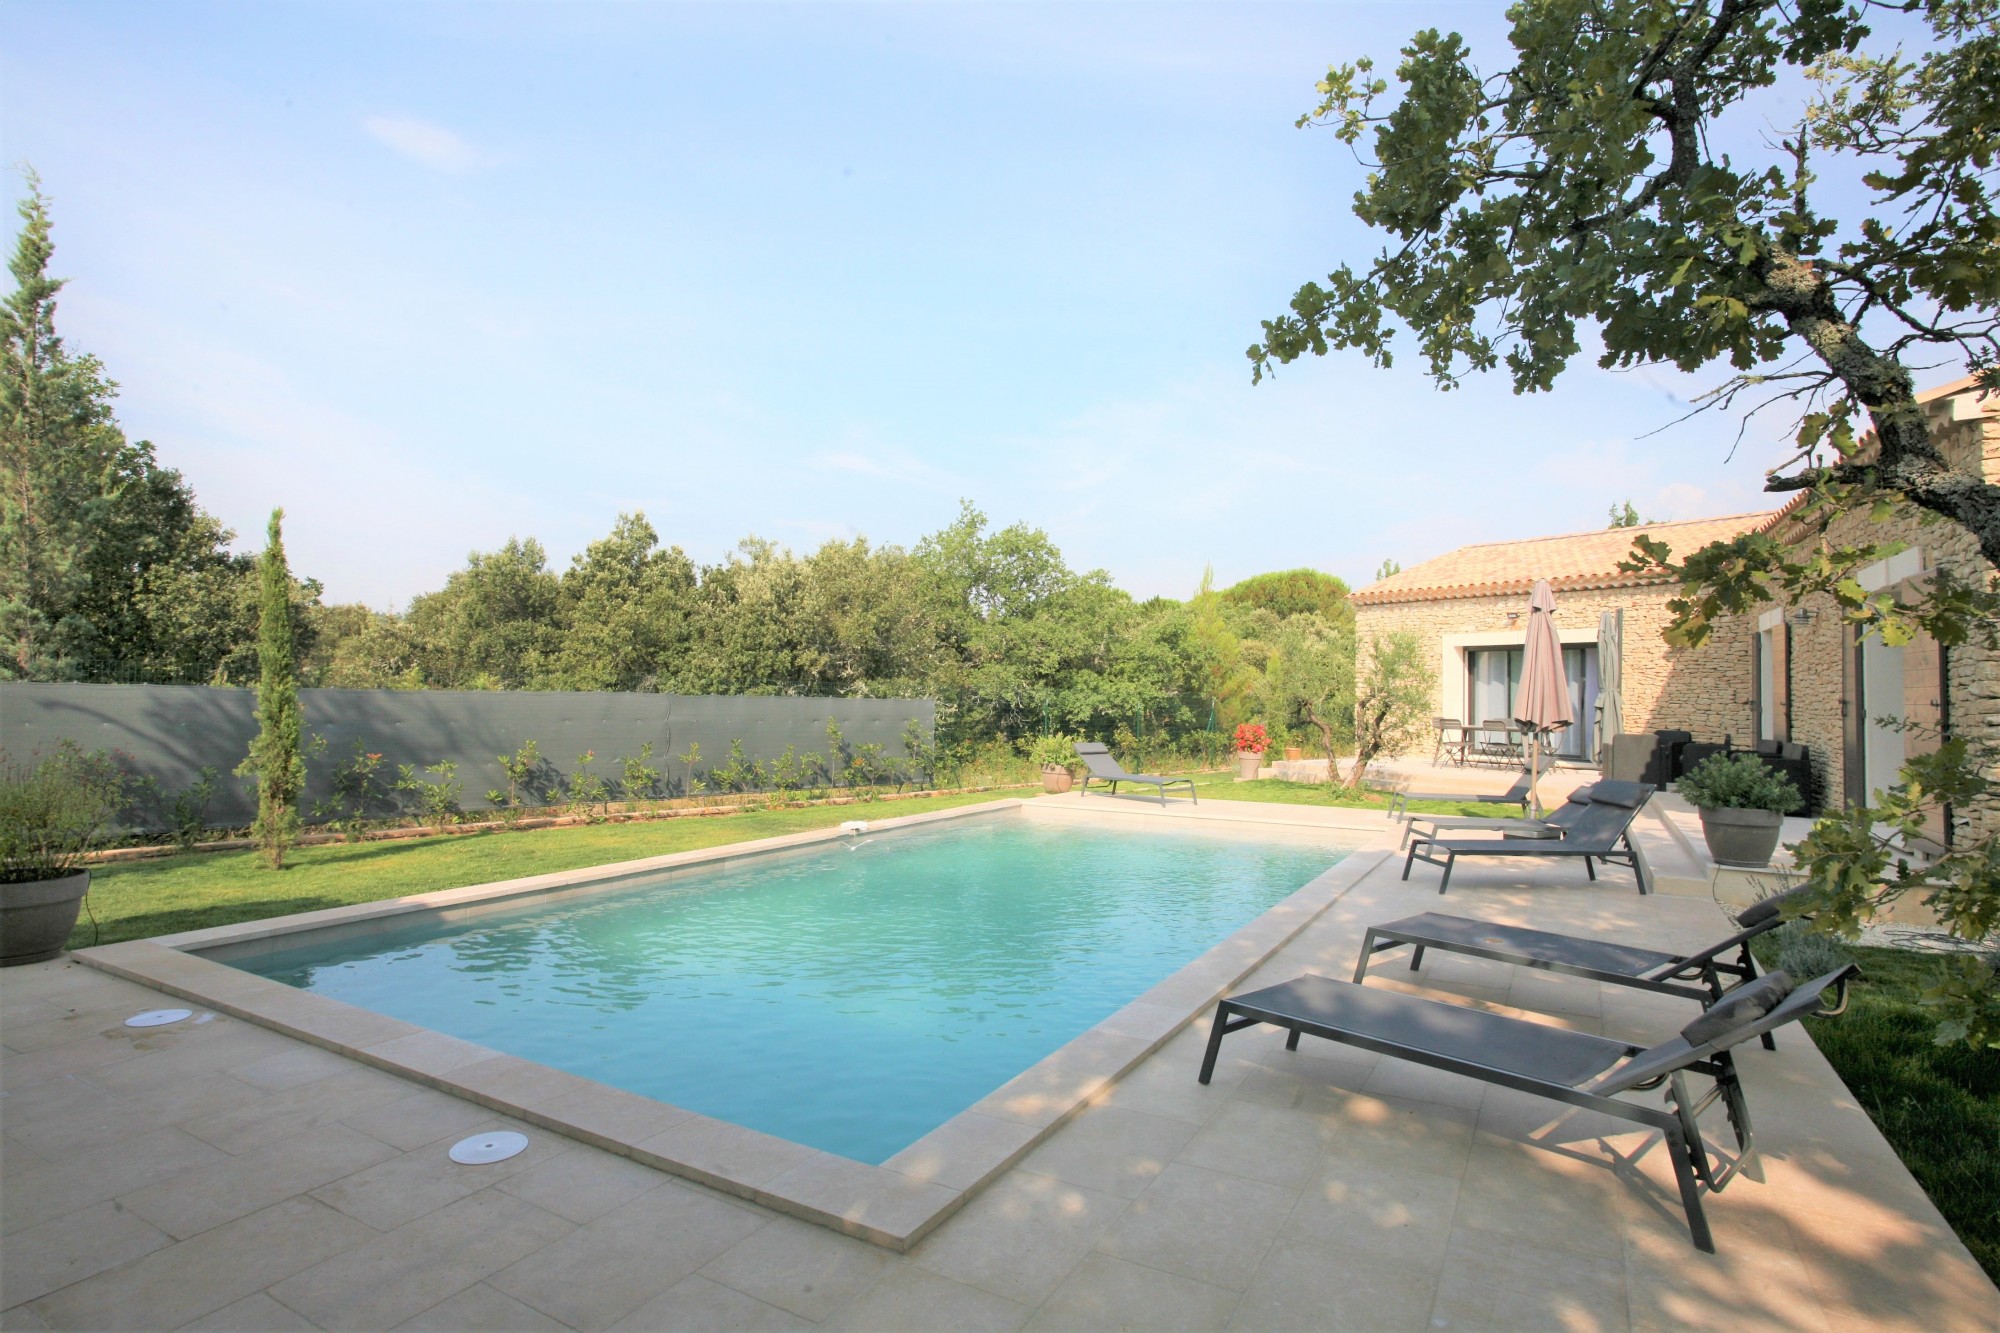 Location Gordes, location saisonnière en Luberon, belle villa récente au calme, entièrement climatisée